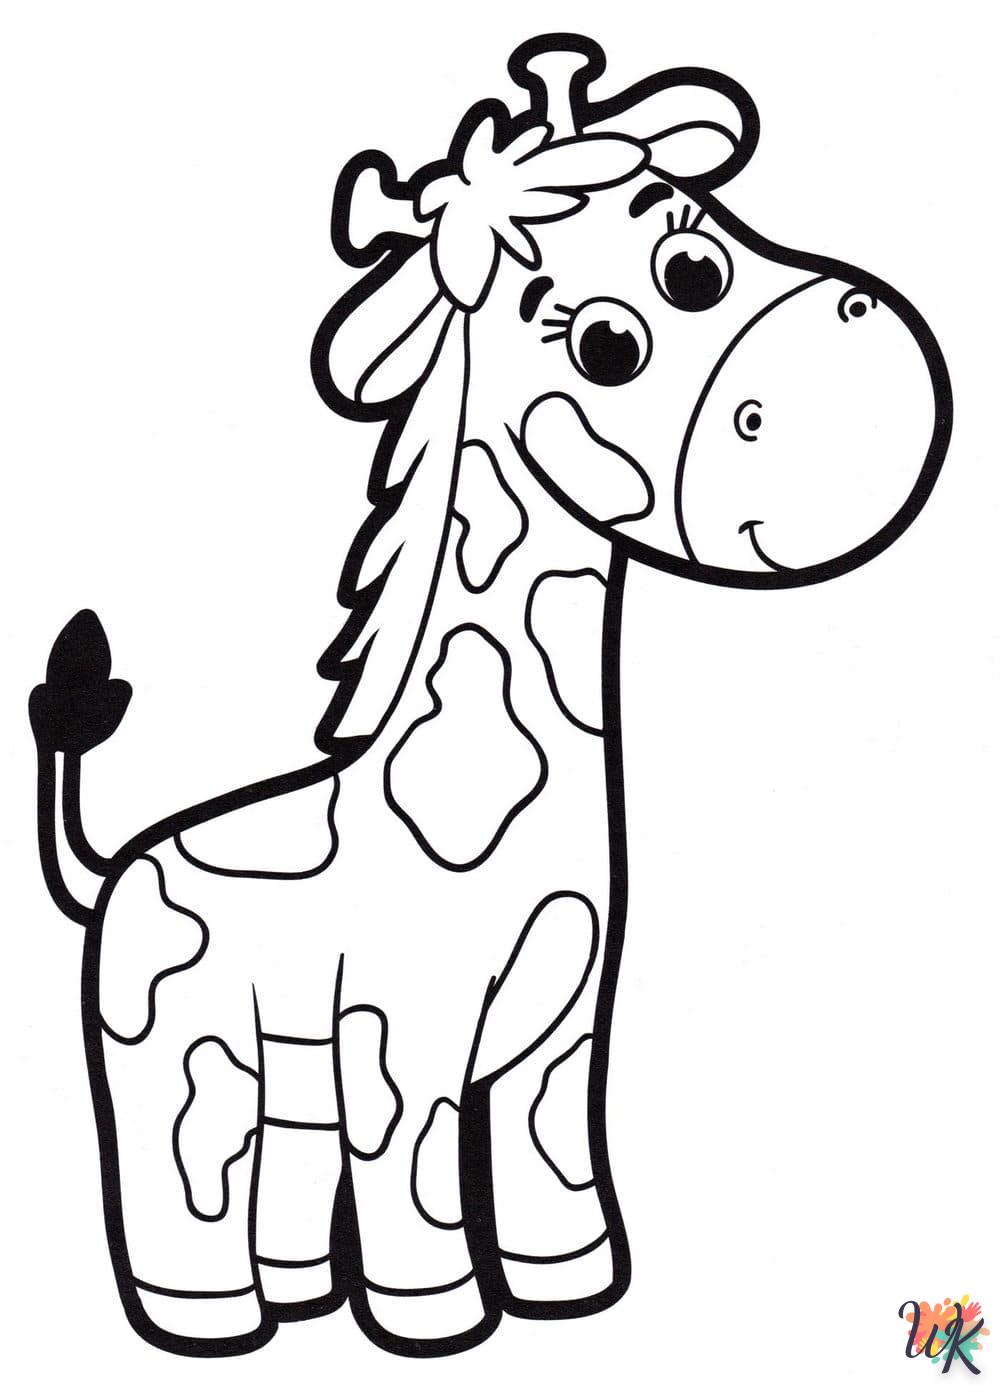 Giraffe kleurplaten6